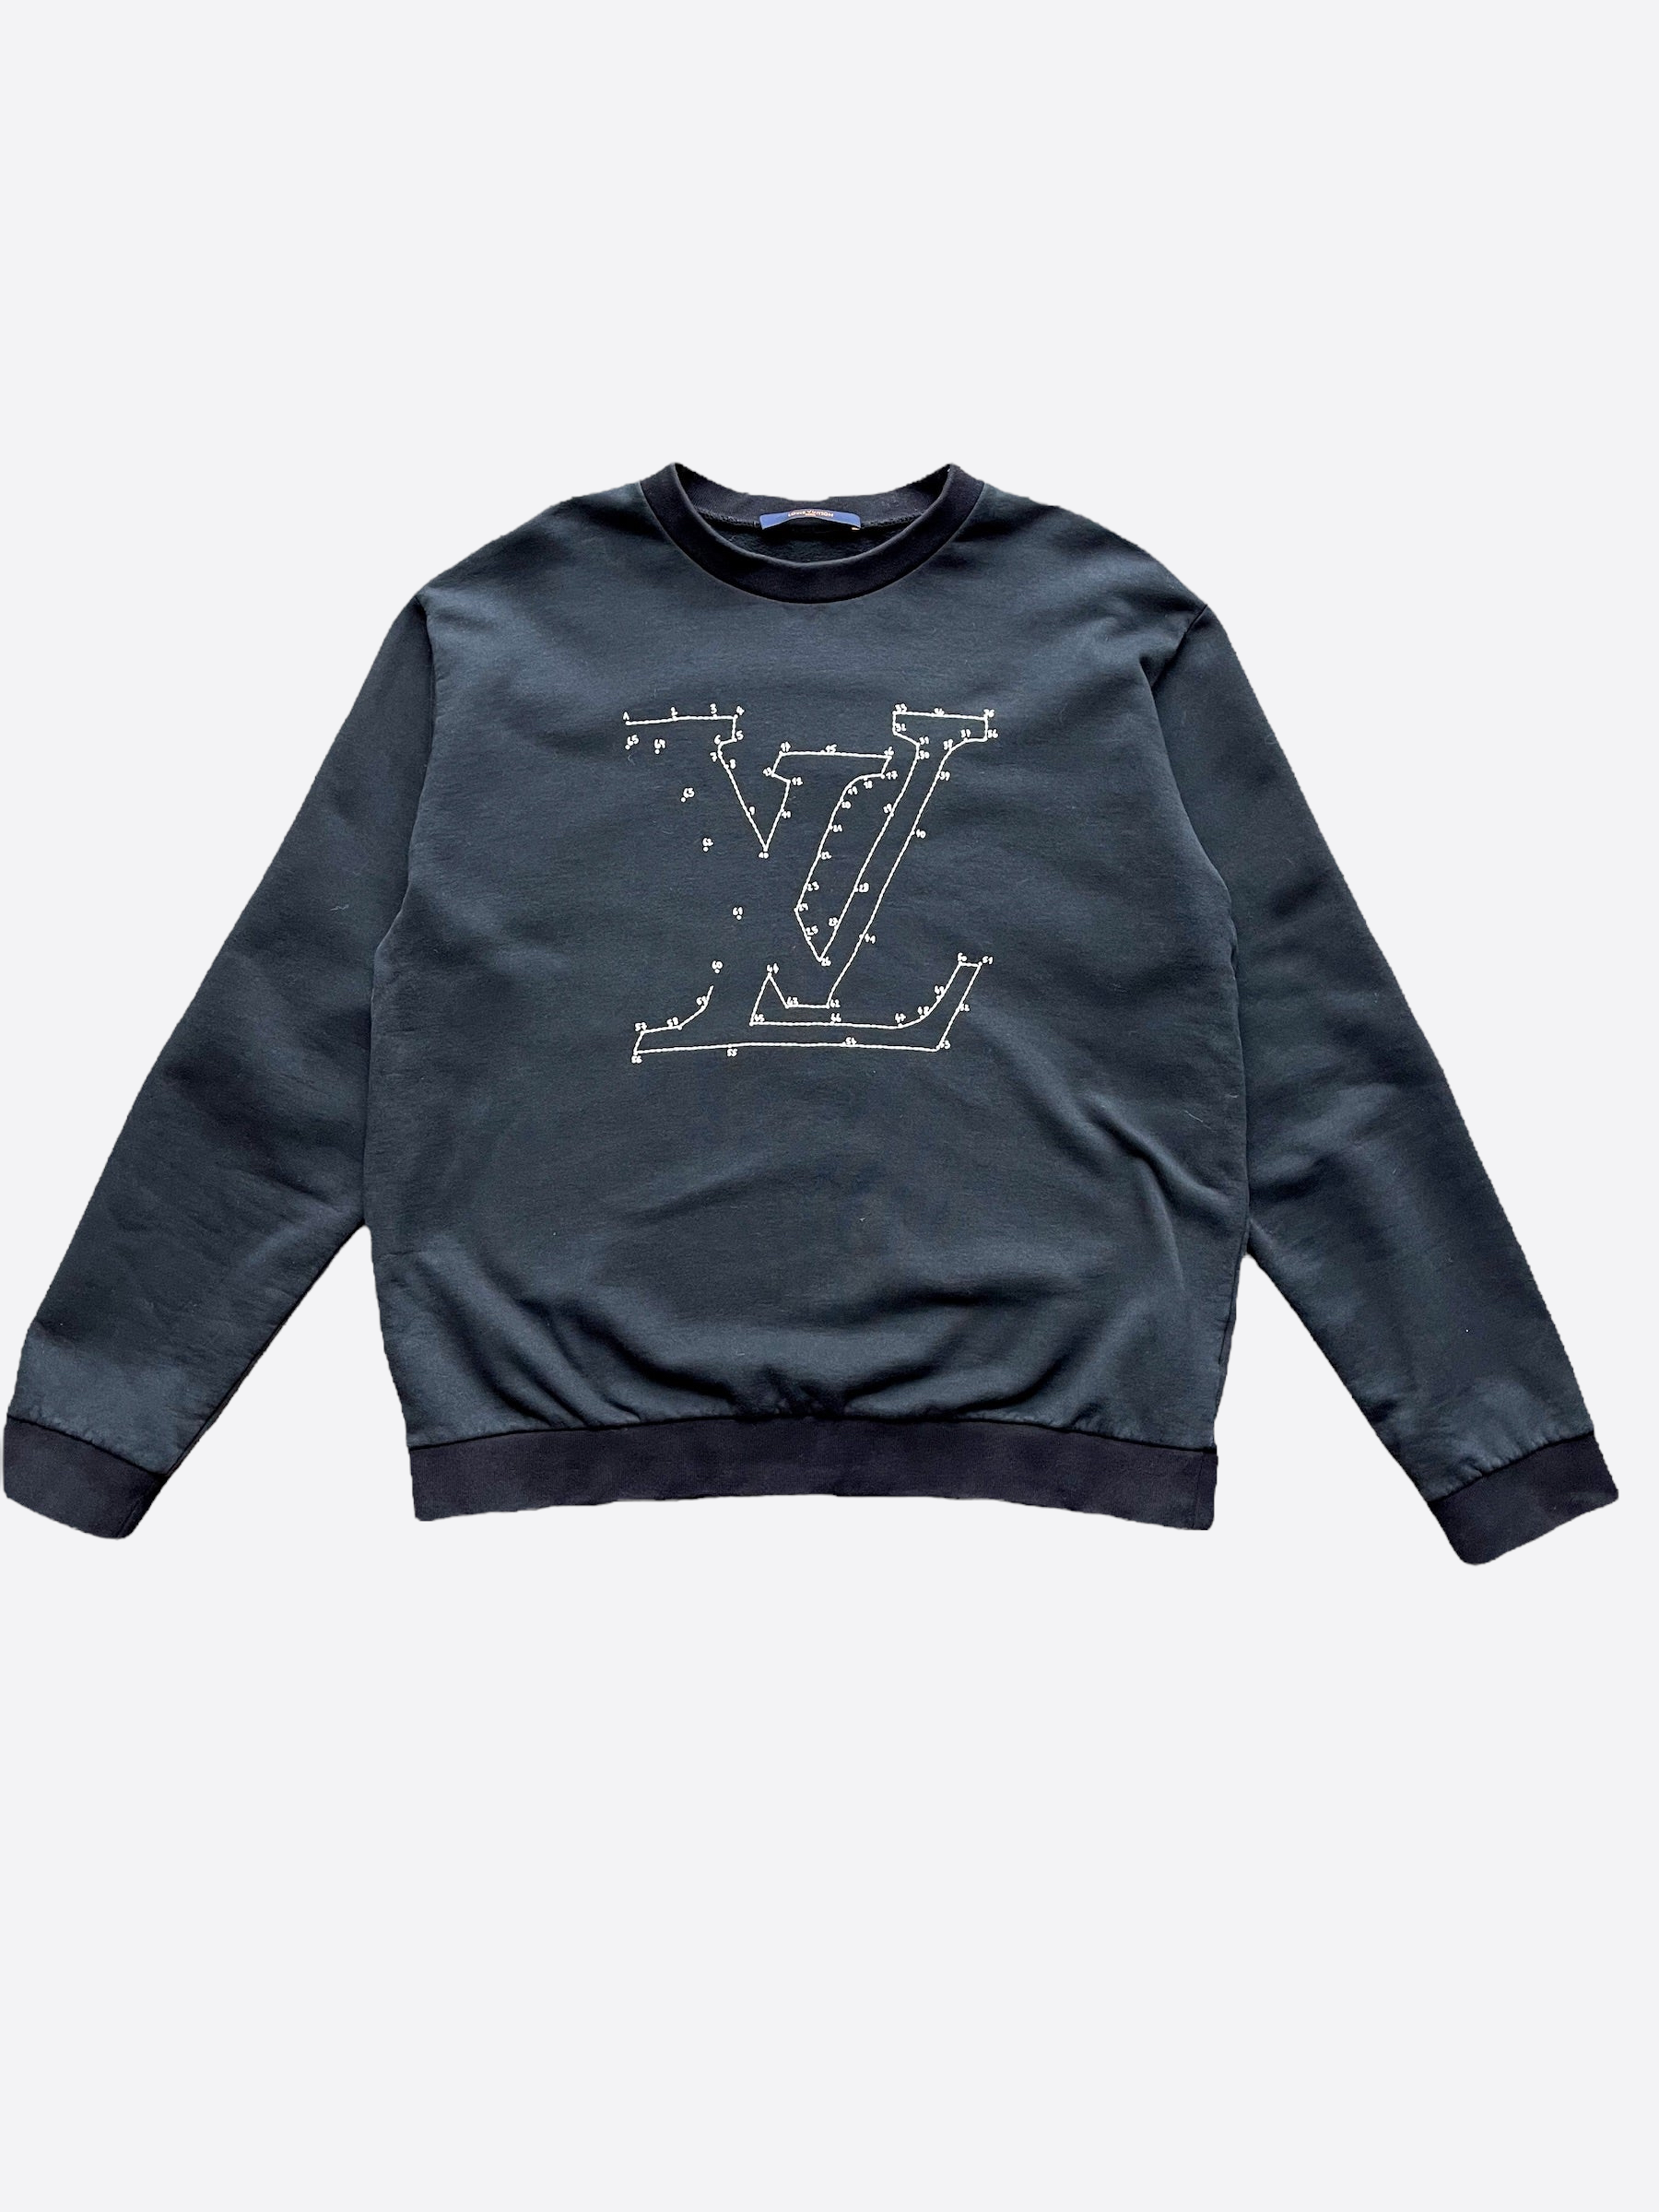 Louis Vuitton Black Cotton LV Stitched Crew Neck T-shirt S Louis Vuitton |  The Luxury Closet